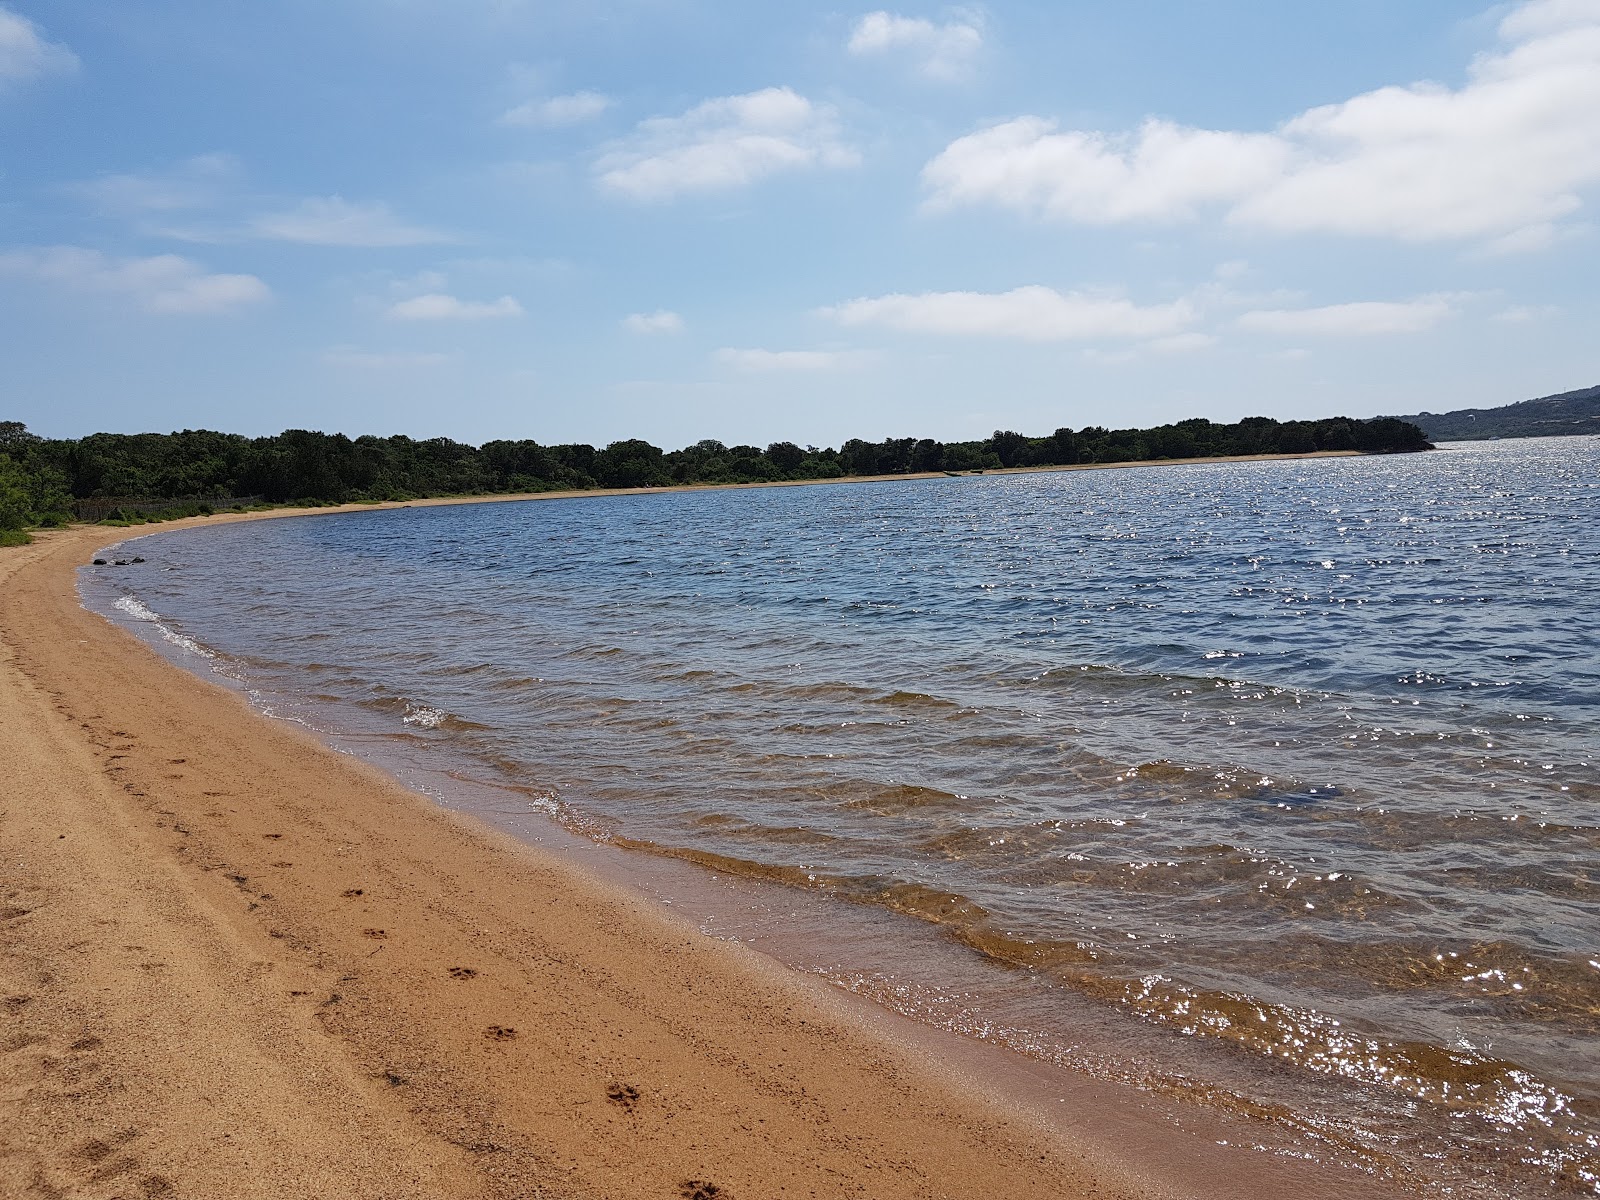 Zdjęcie Figari beach położony w naturalnym obszarze